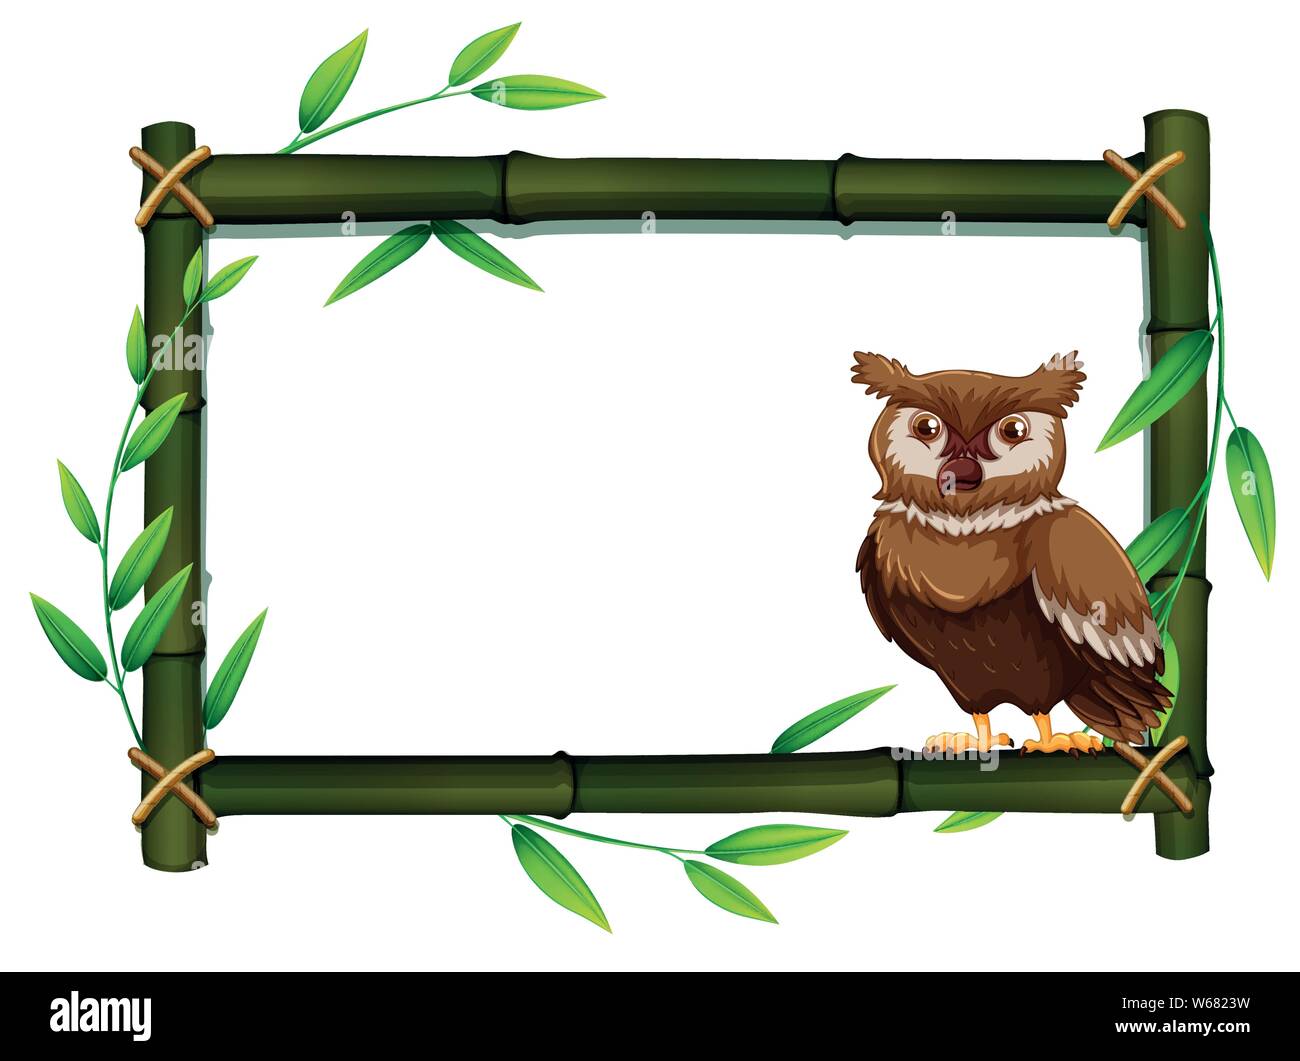 Owl dans une armature en bambou illustration Illustration de Vecteur